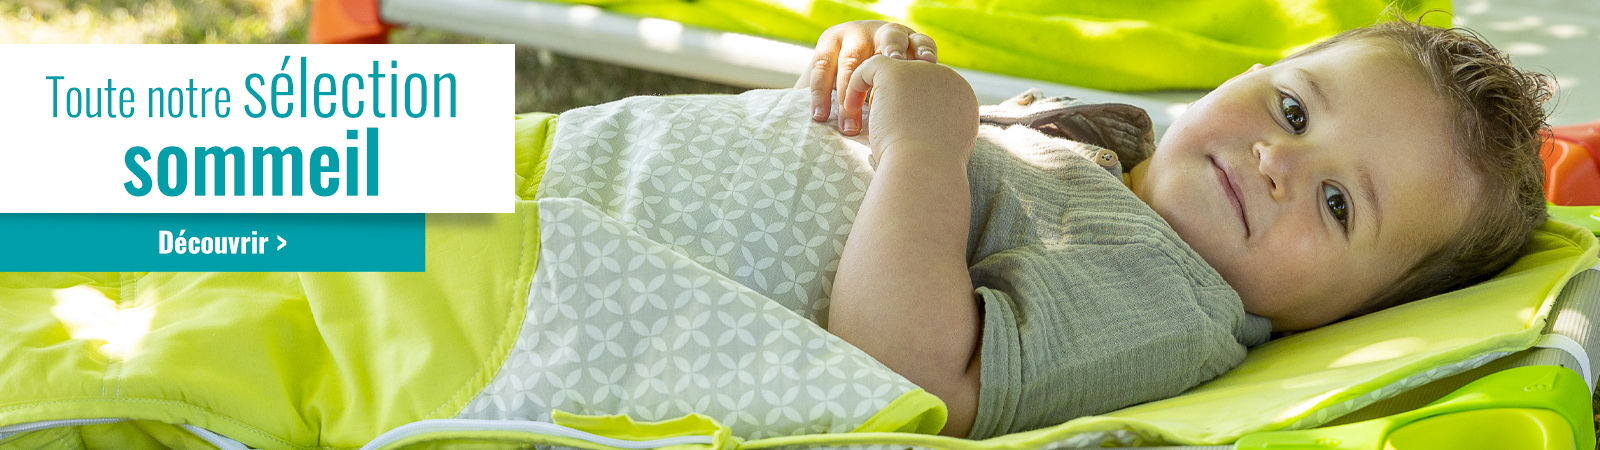 sélection sommeil sieste assistante maternelle indispensables